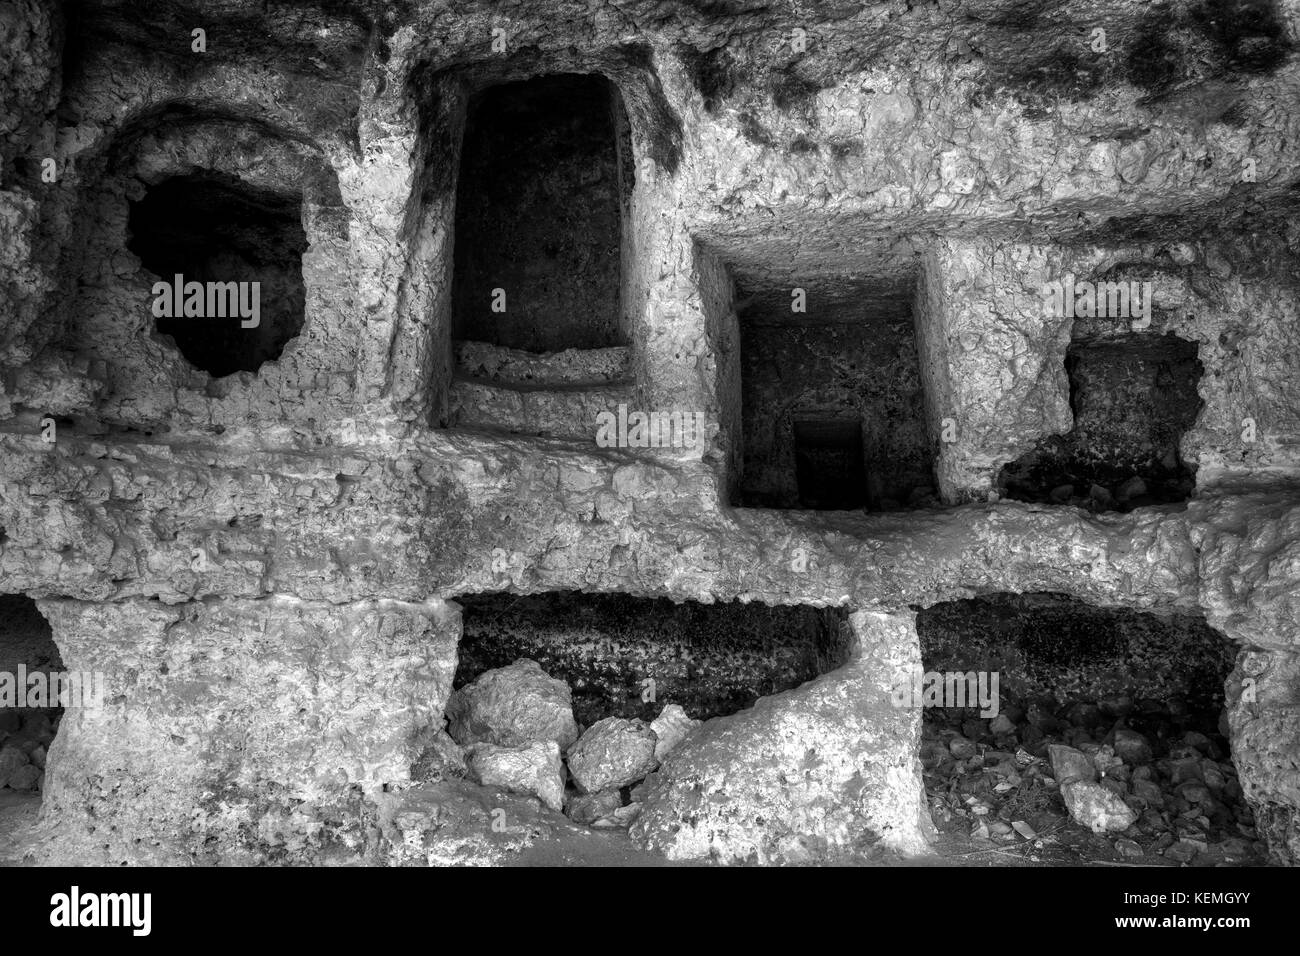 Punischen Nekropole in Malta, in Fels gehauene Gräber aus der römischen Zeit Stockfoto